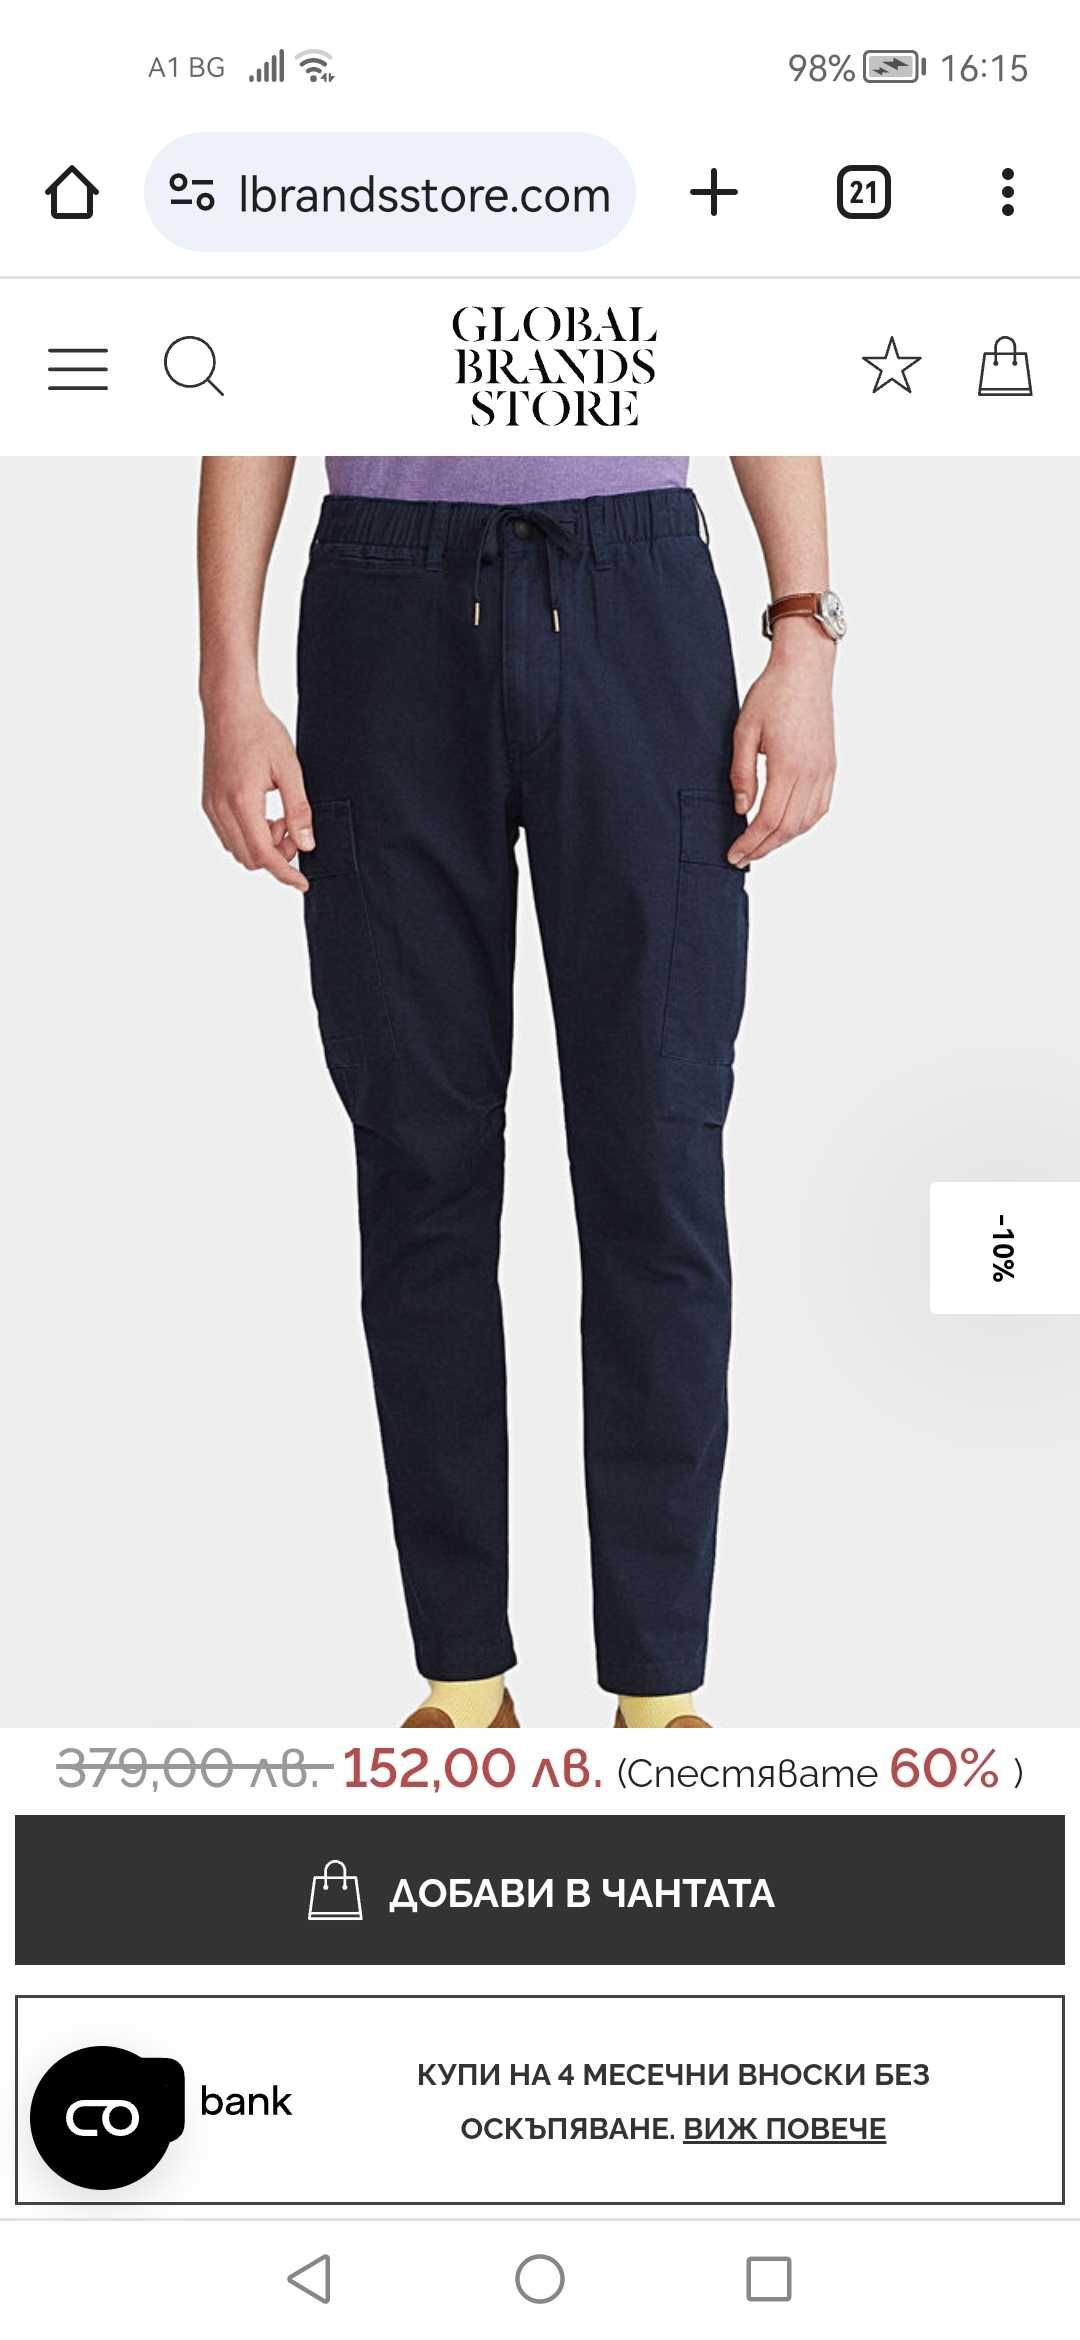 Polo Ralph Lauren Men's Cargo Pants.